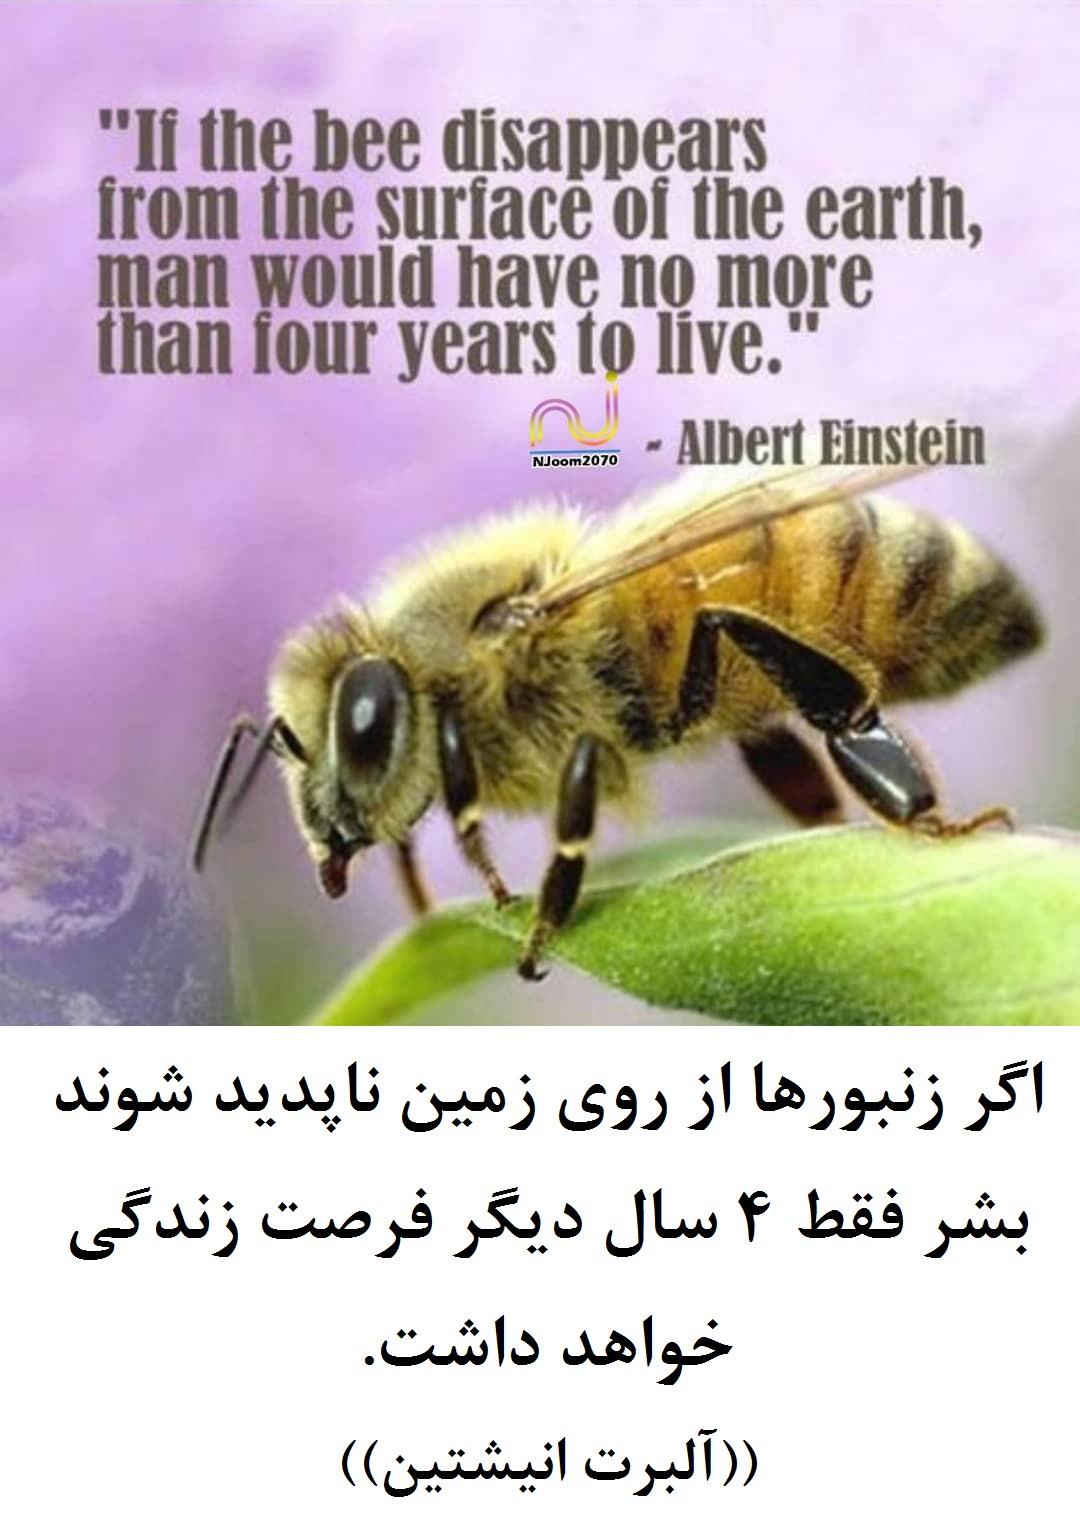 زنبورها باعث ماندگاری انسانها 